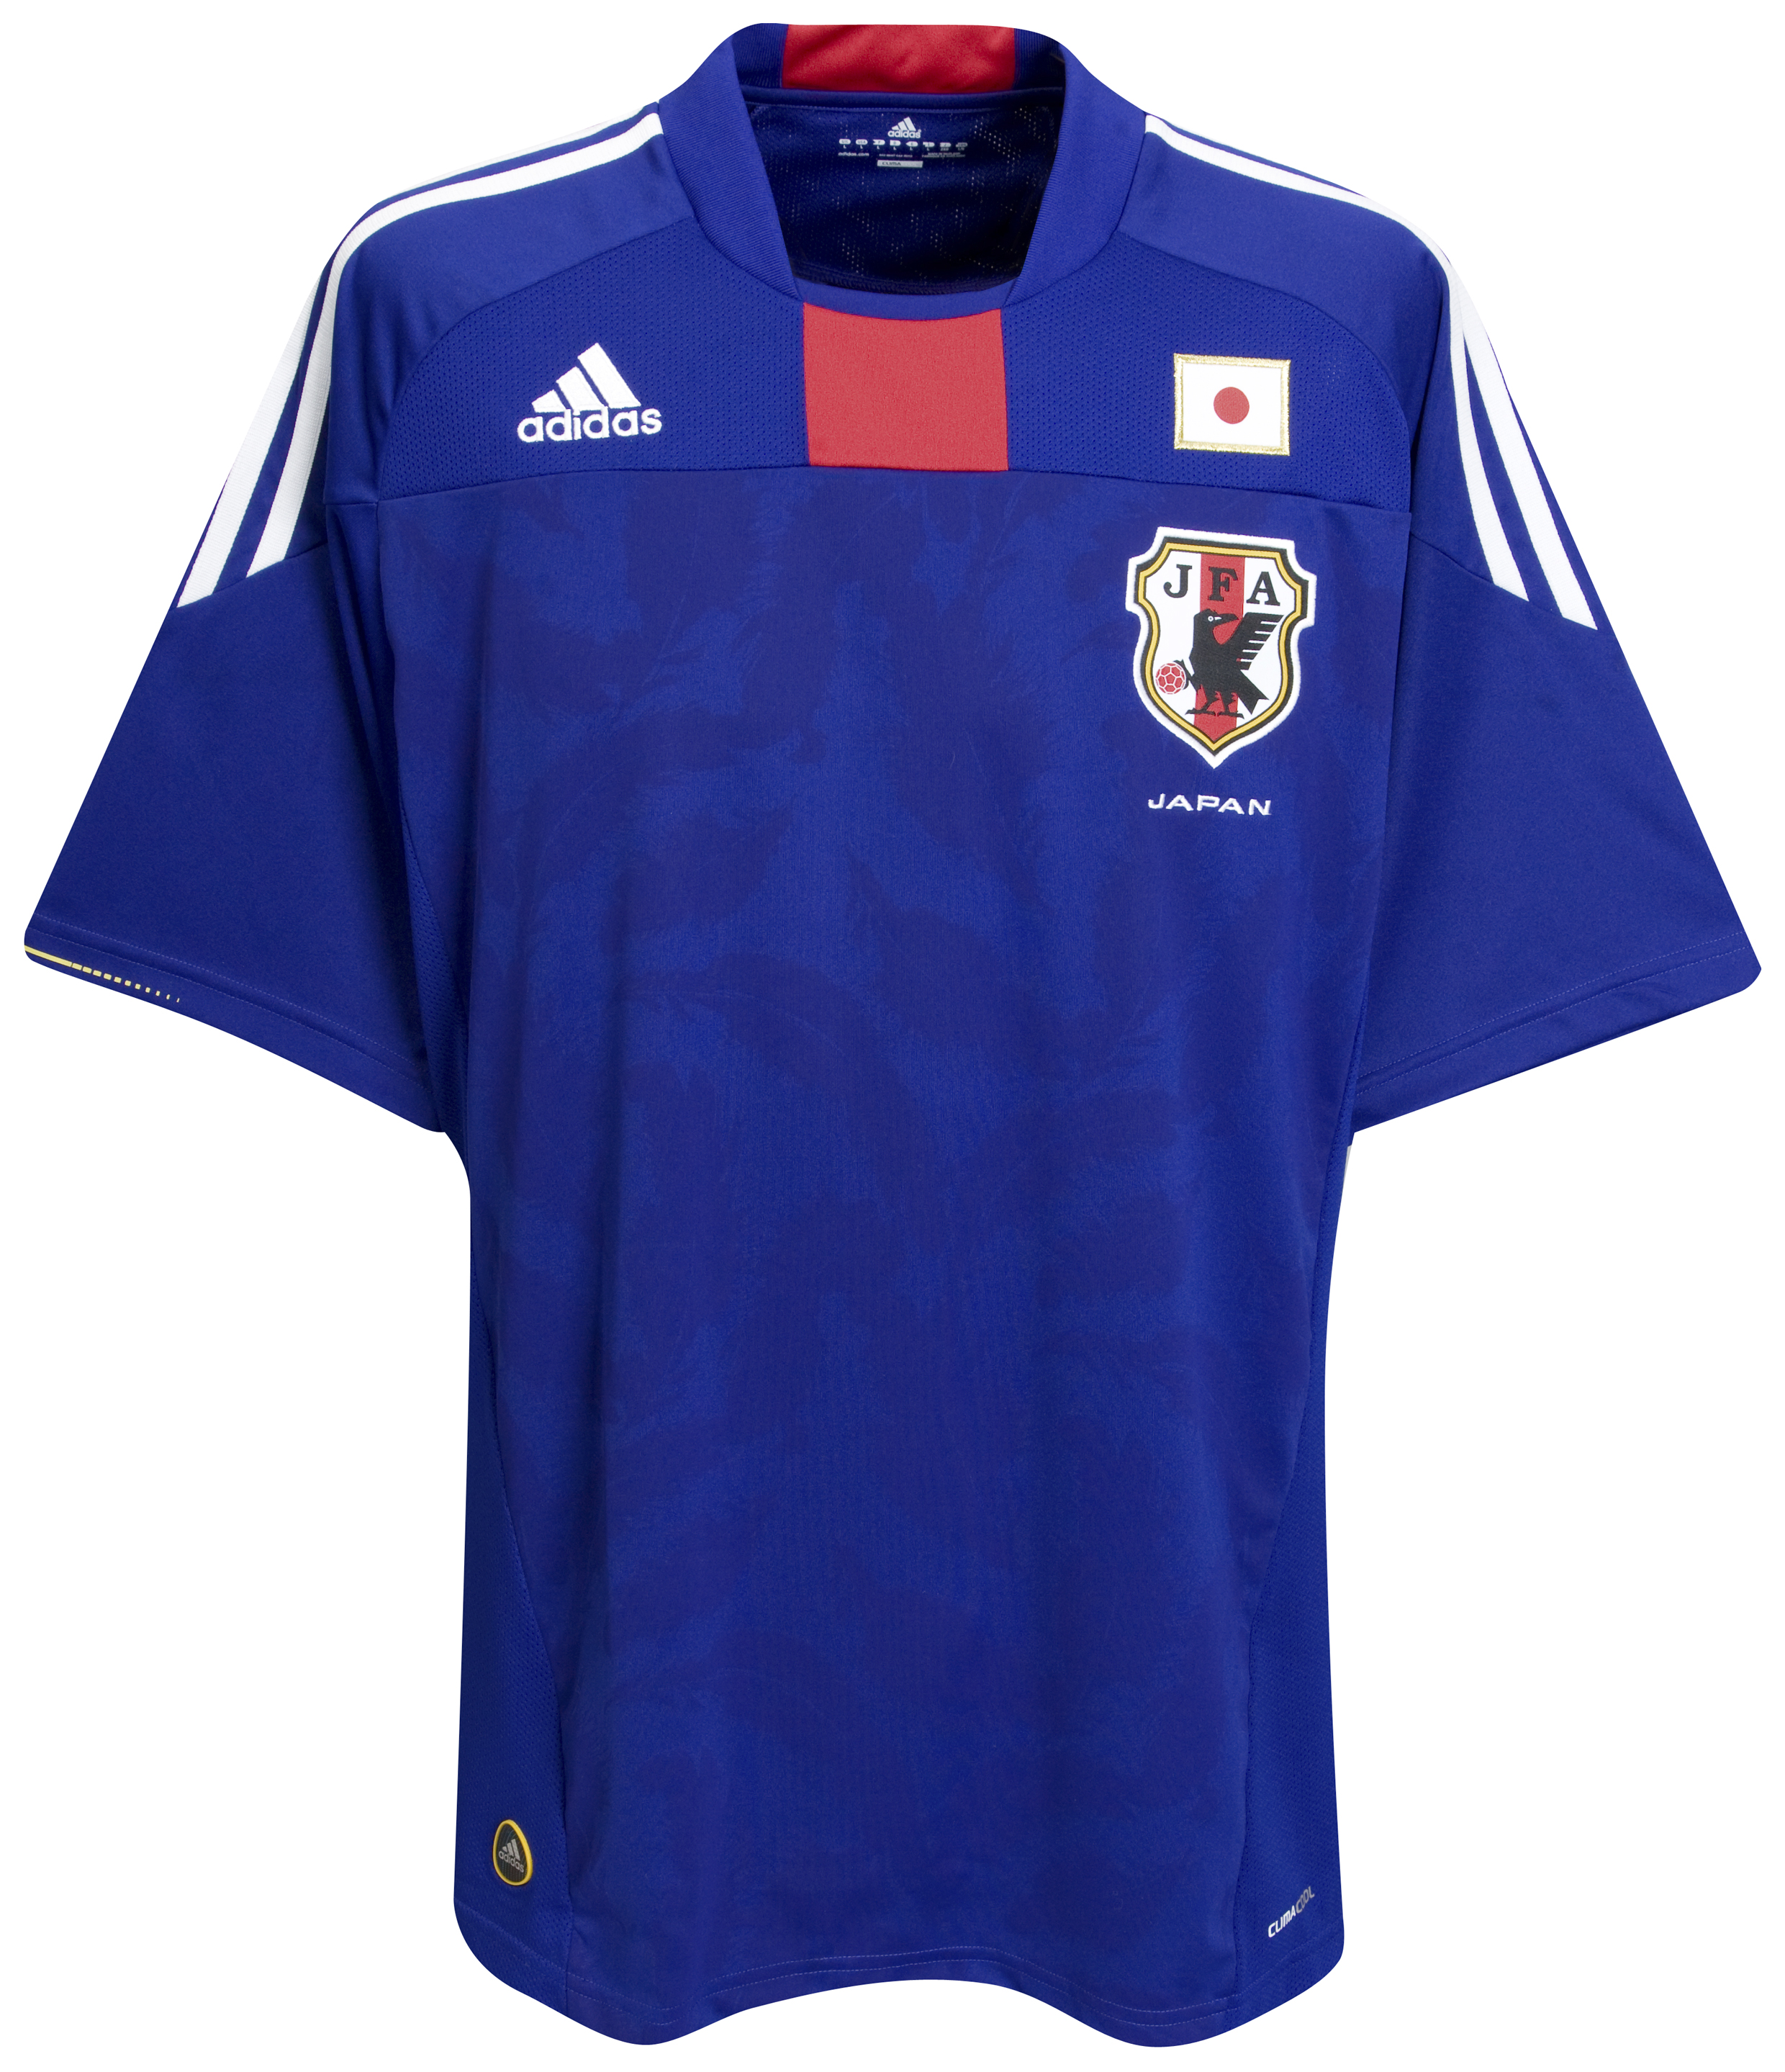 ملابس المنتخبات لكأس العالم2010م Kb-63744